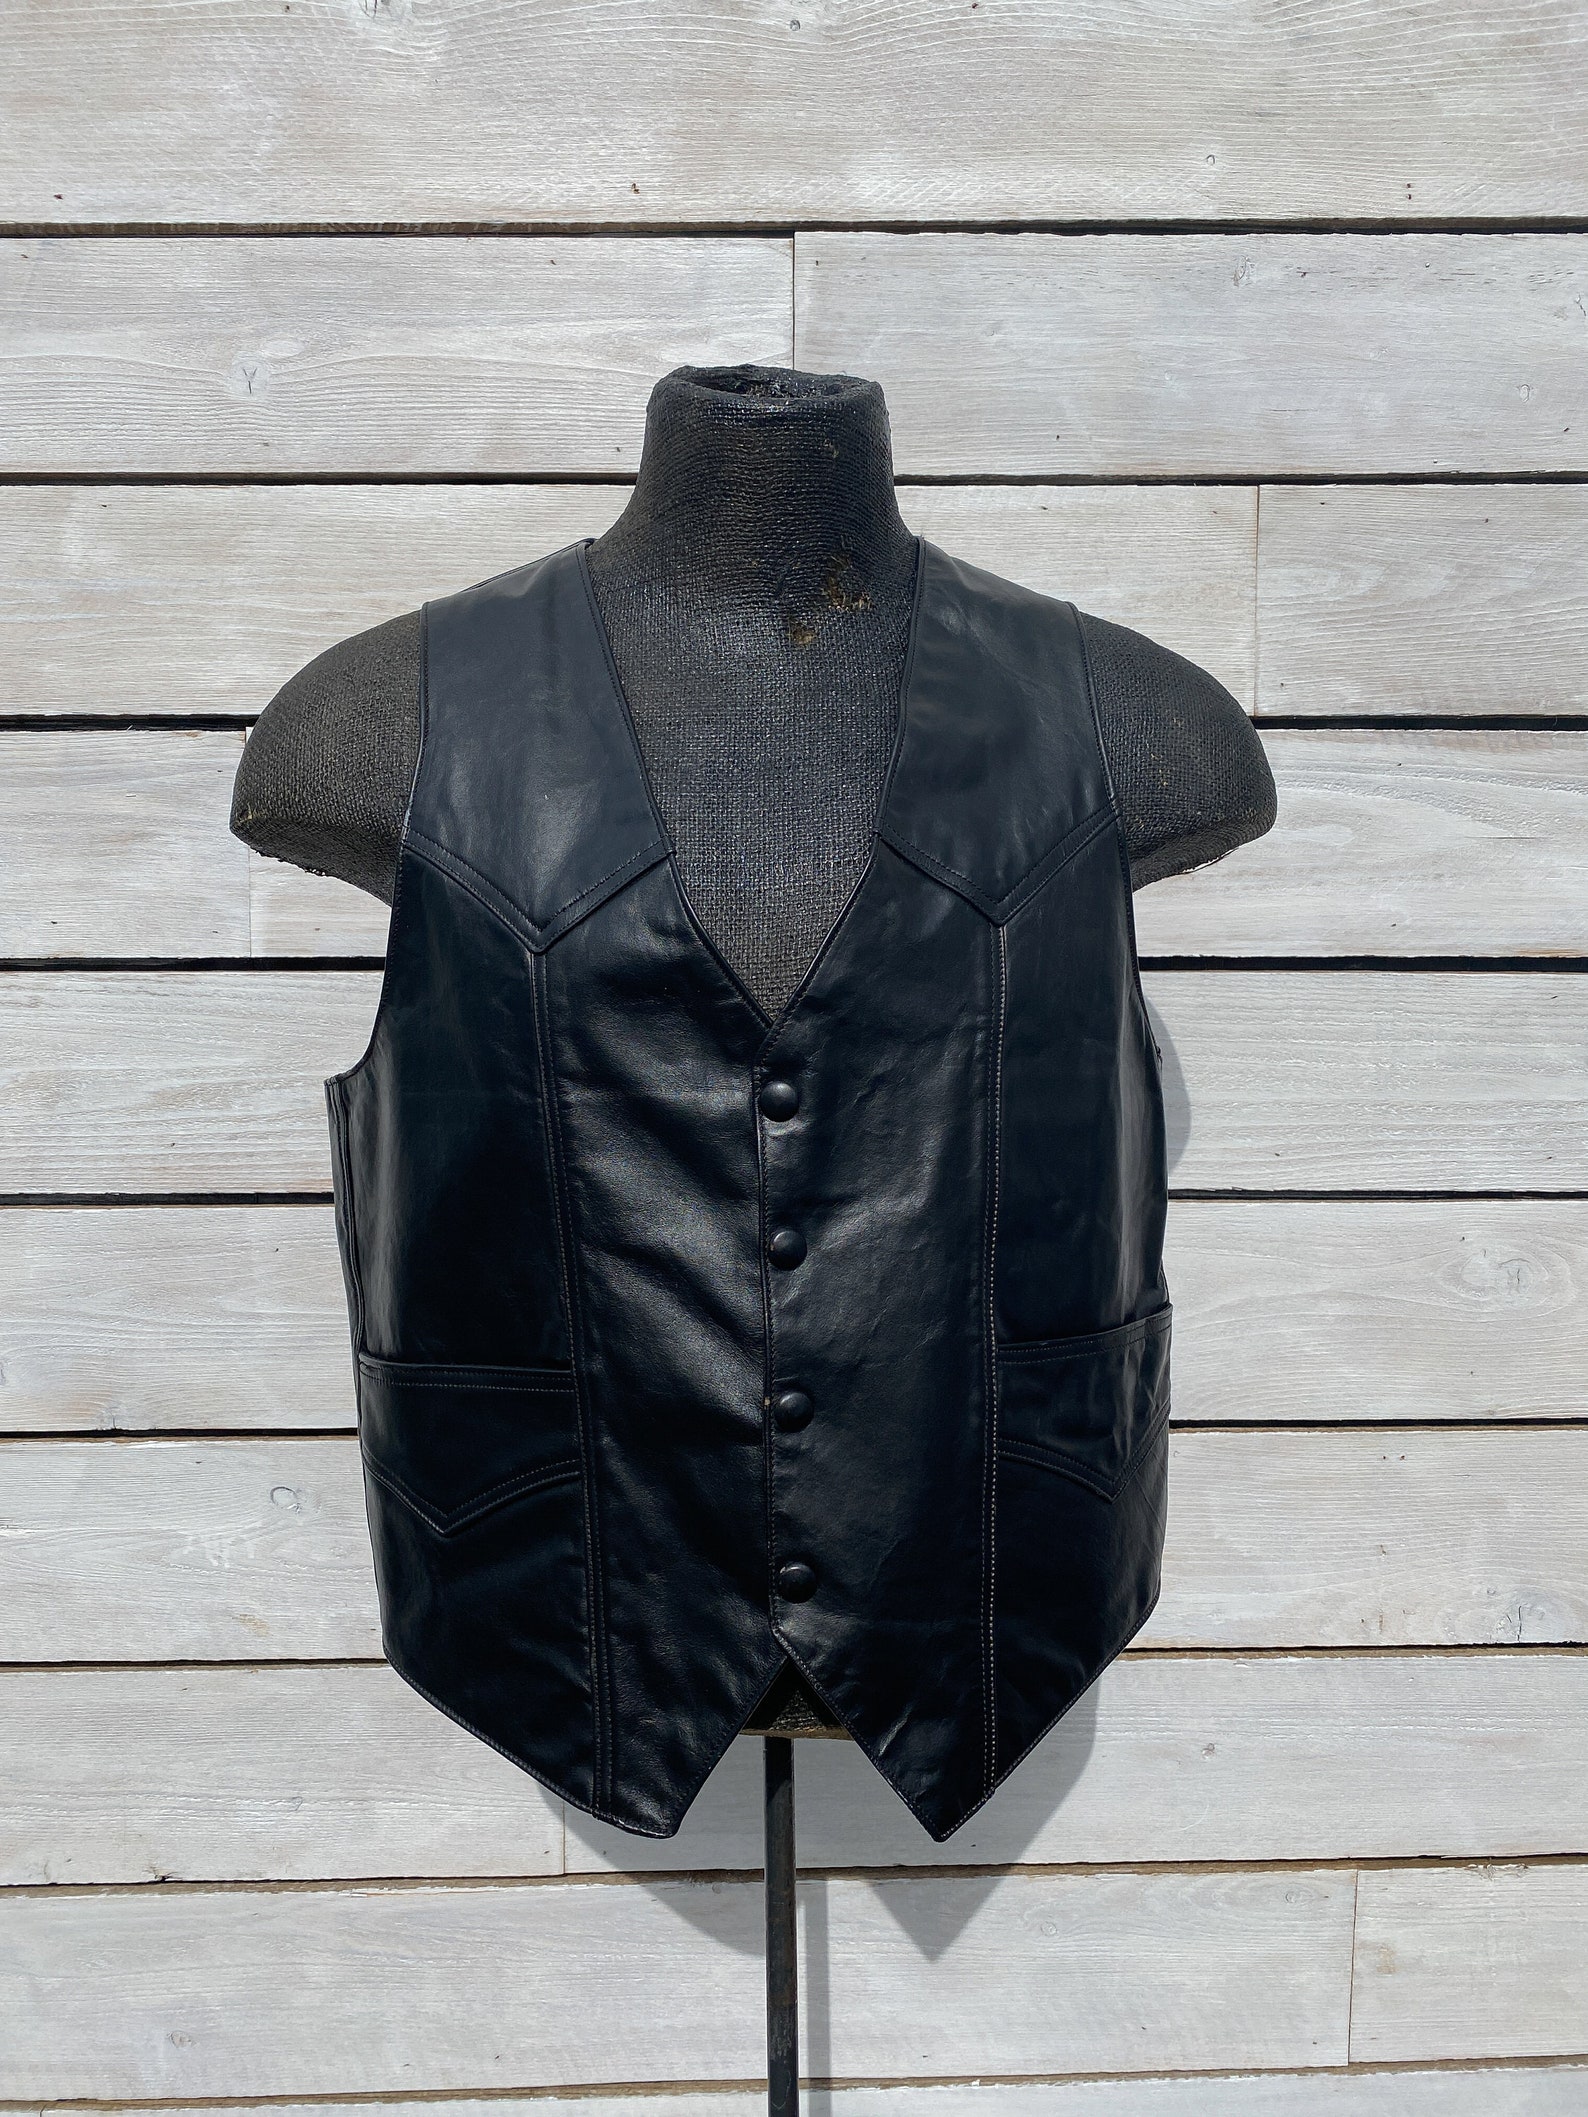 XL vintage biker vest black motorcycle vest leather biker | Etsy